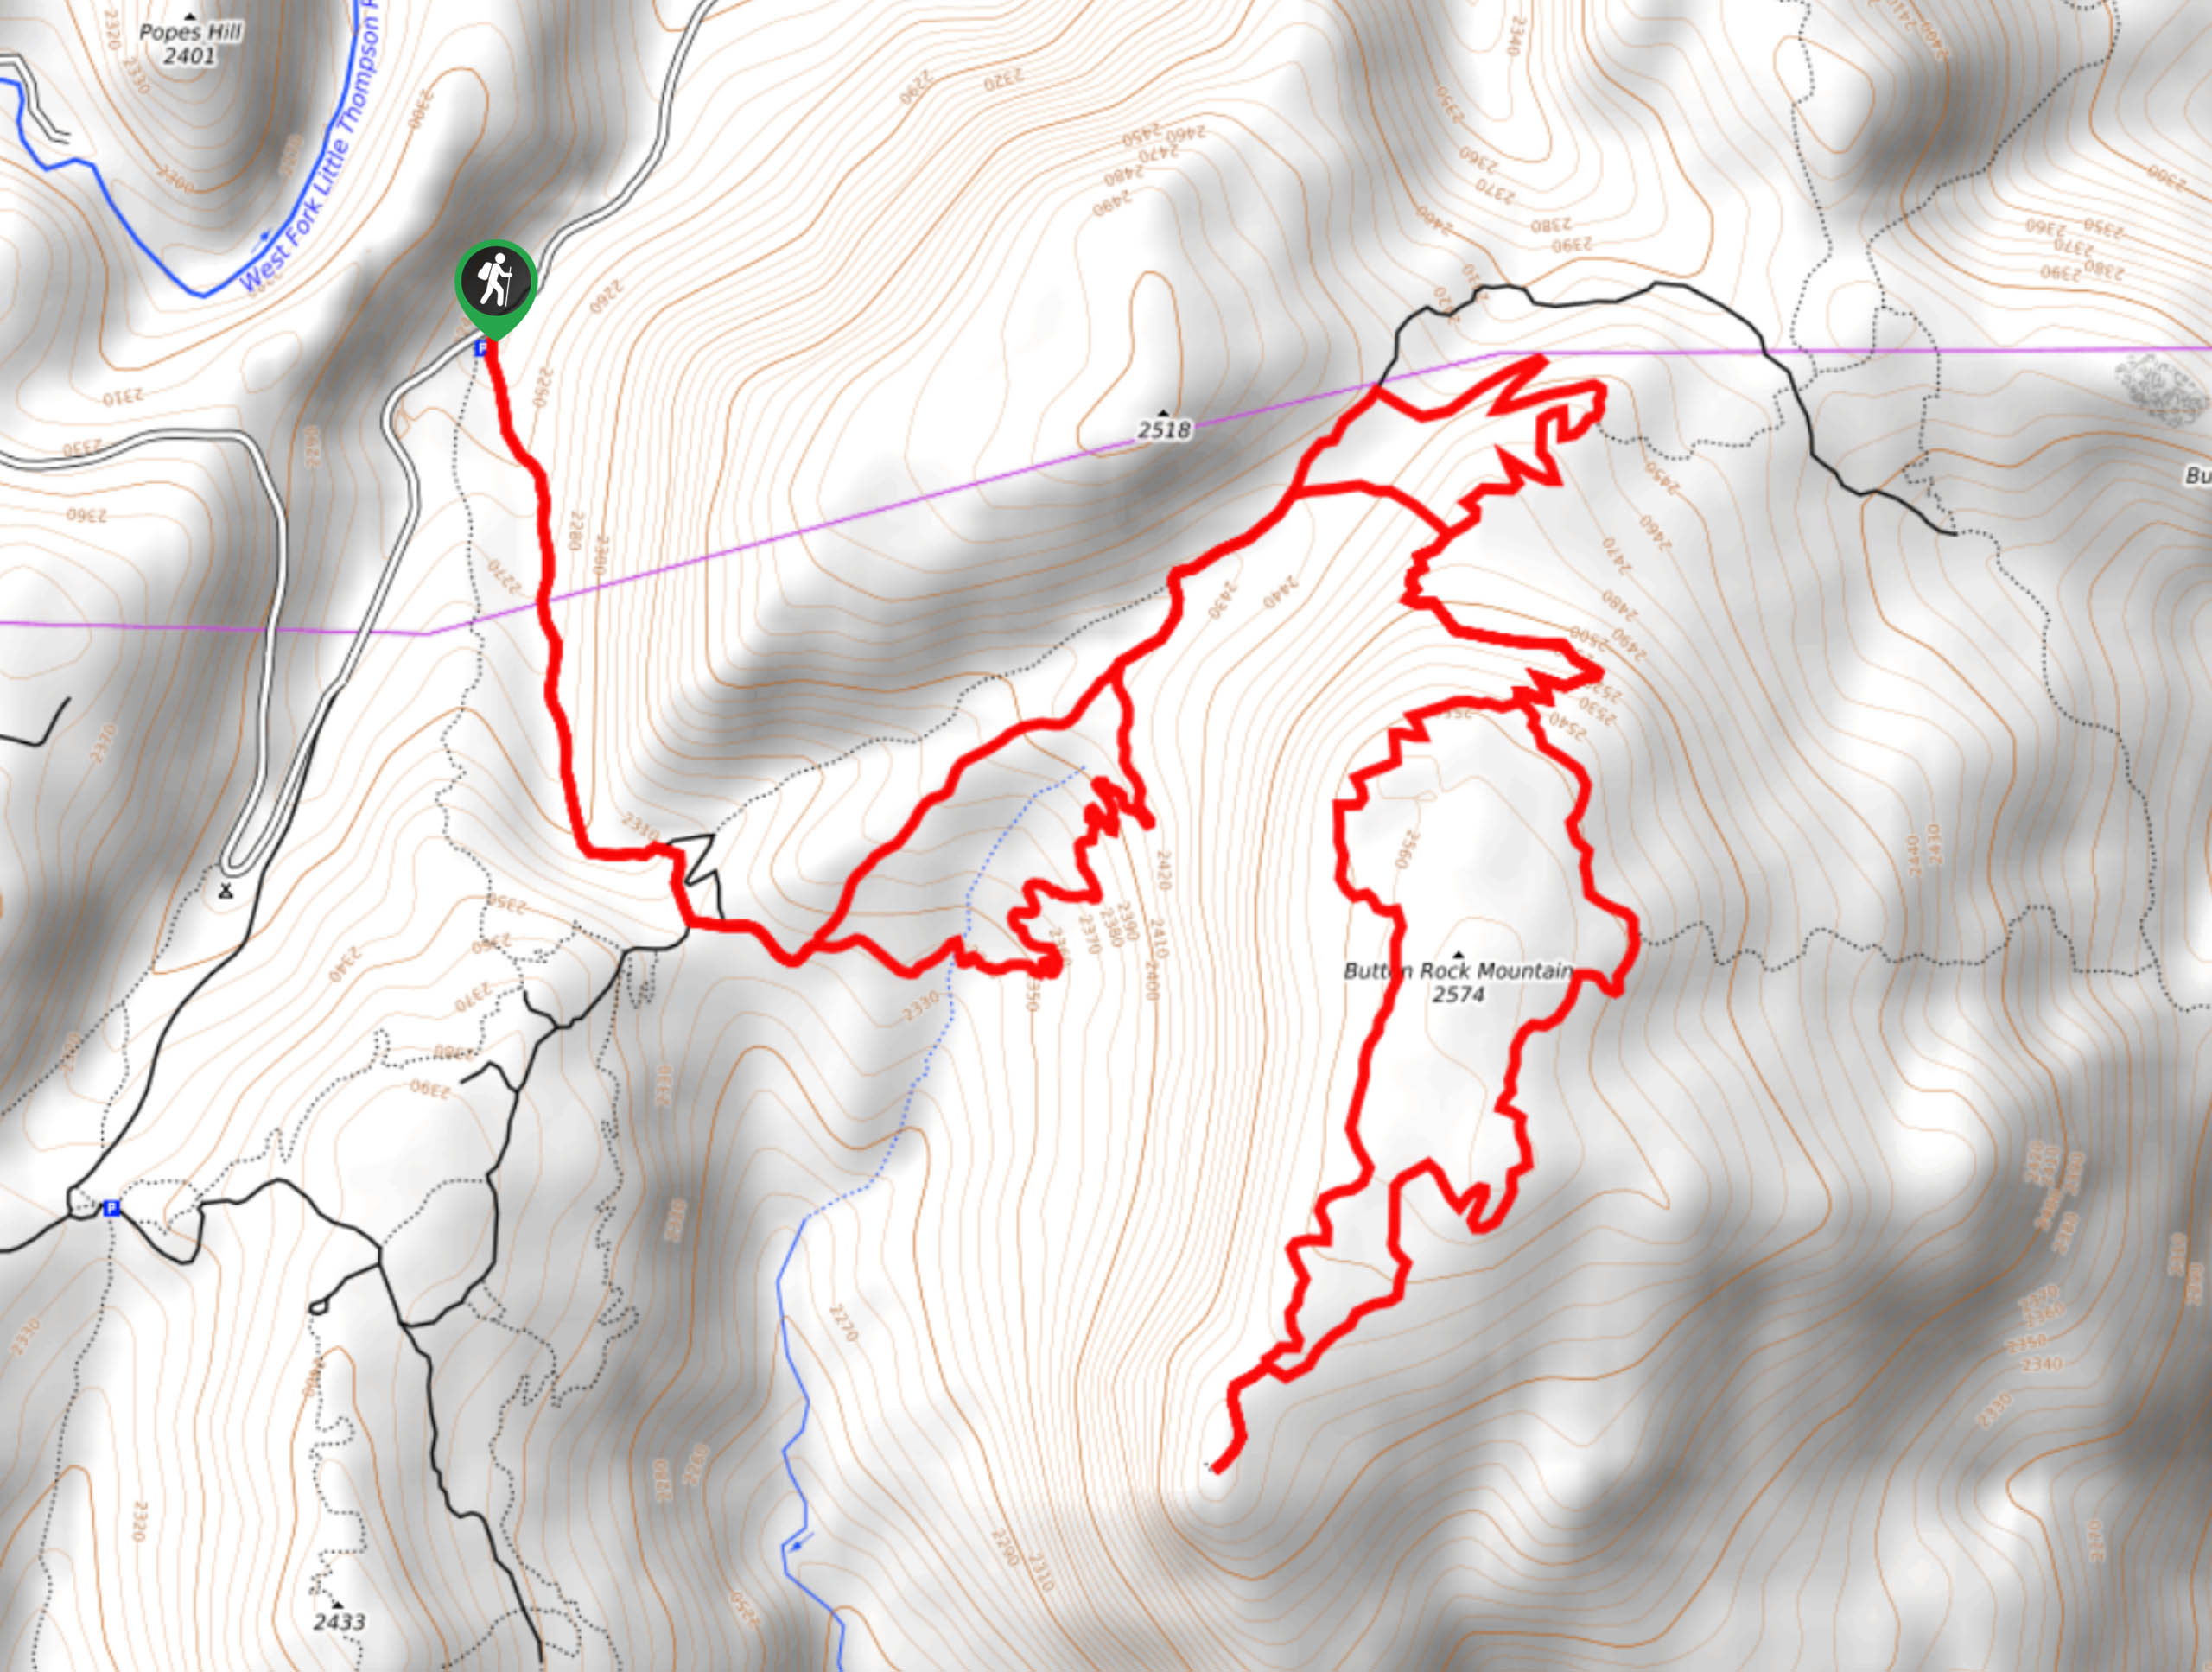 Button Rock Mountain Trail Map